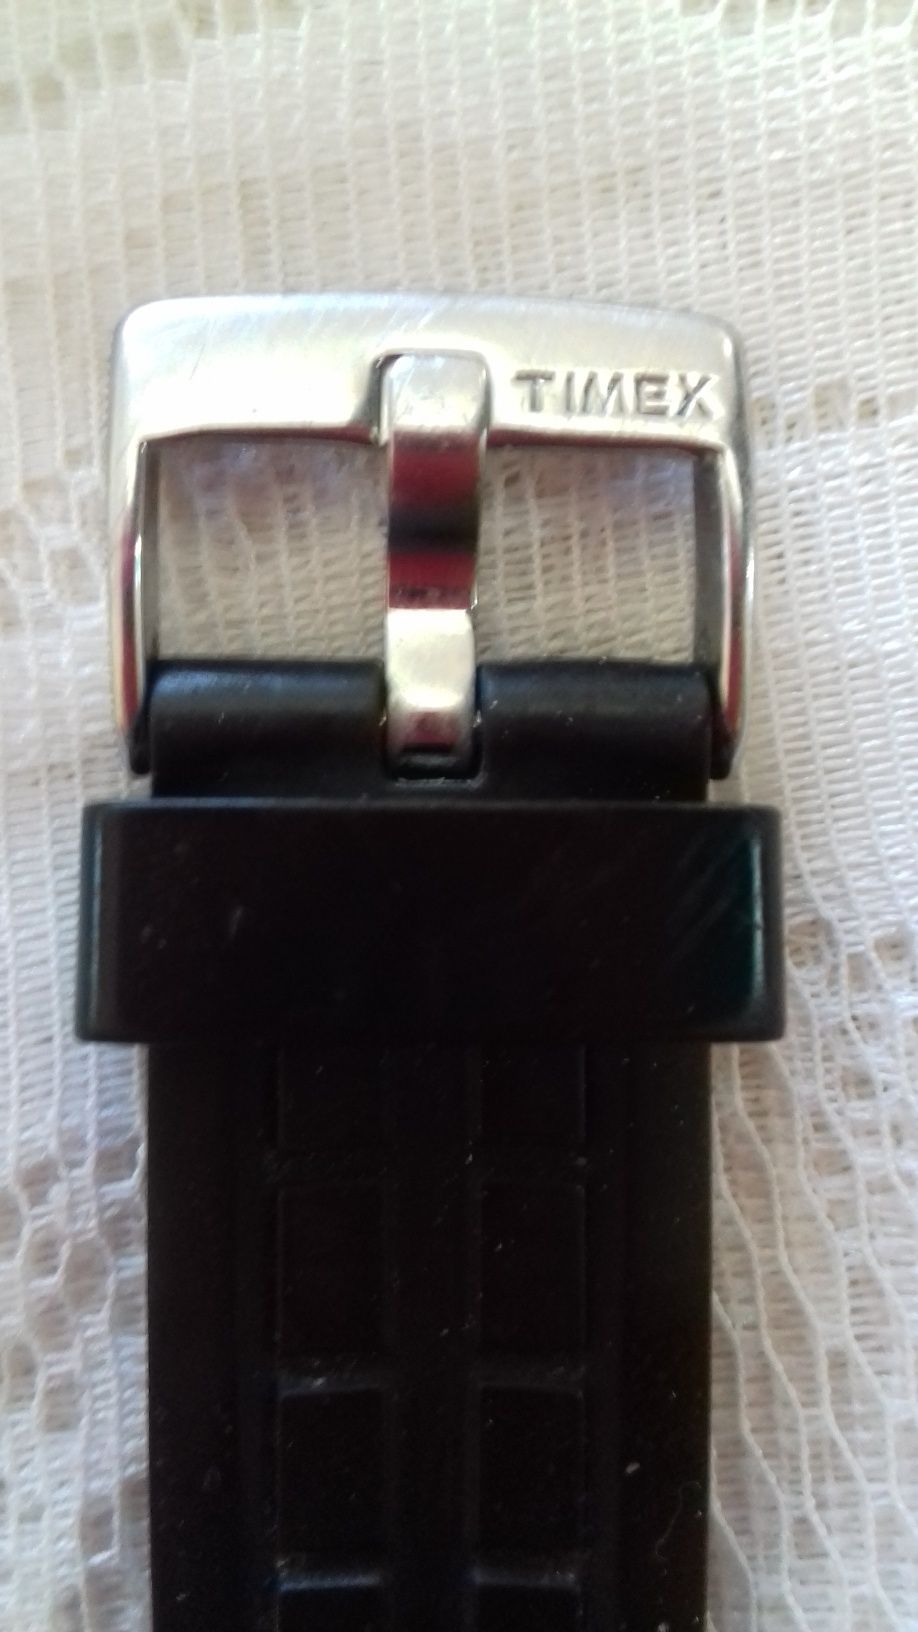 Продам часы TIMEX 1854.